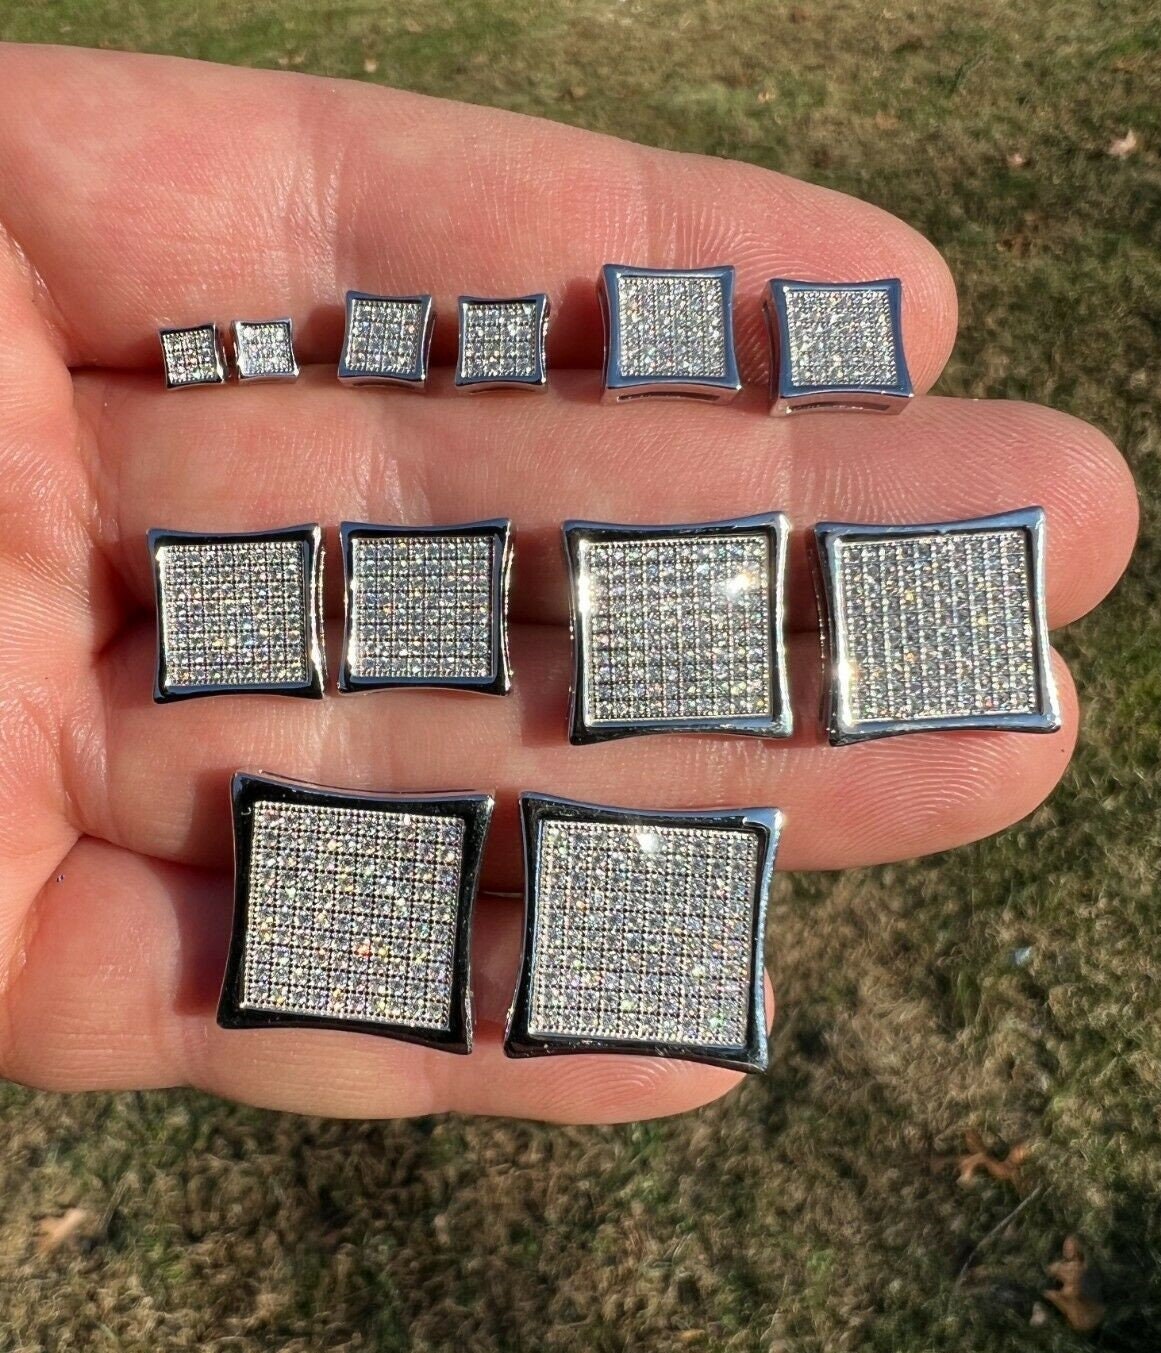 Big 10mm Men Real Solid 10k Gold Iced Kite Moissanite Earrings Pass Diamond  Test